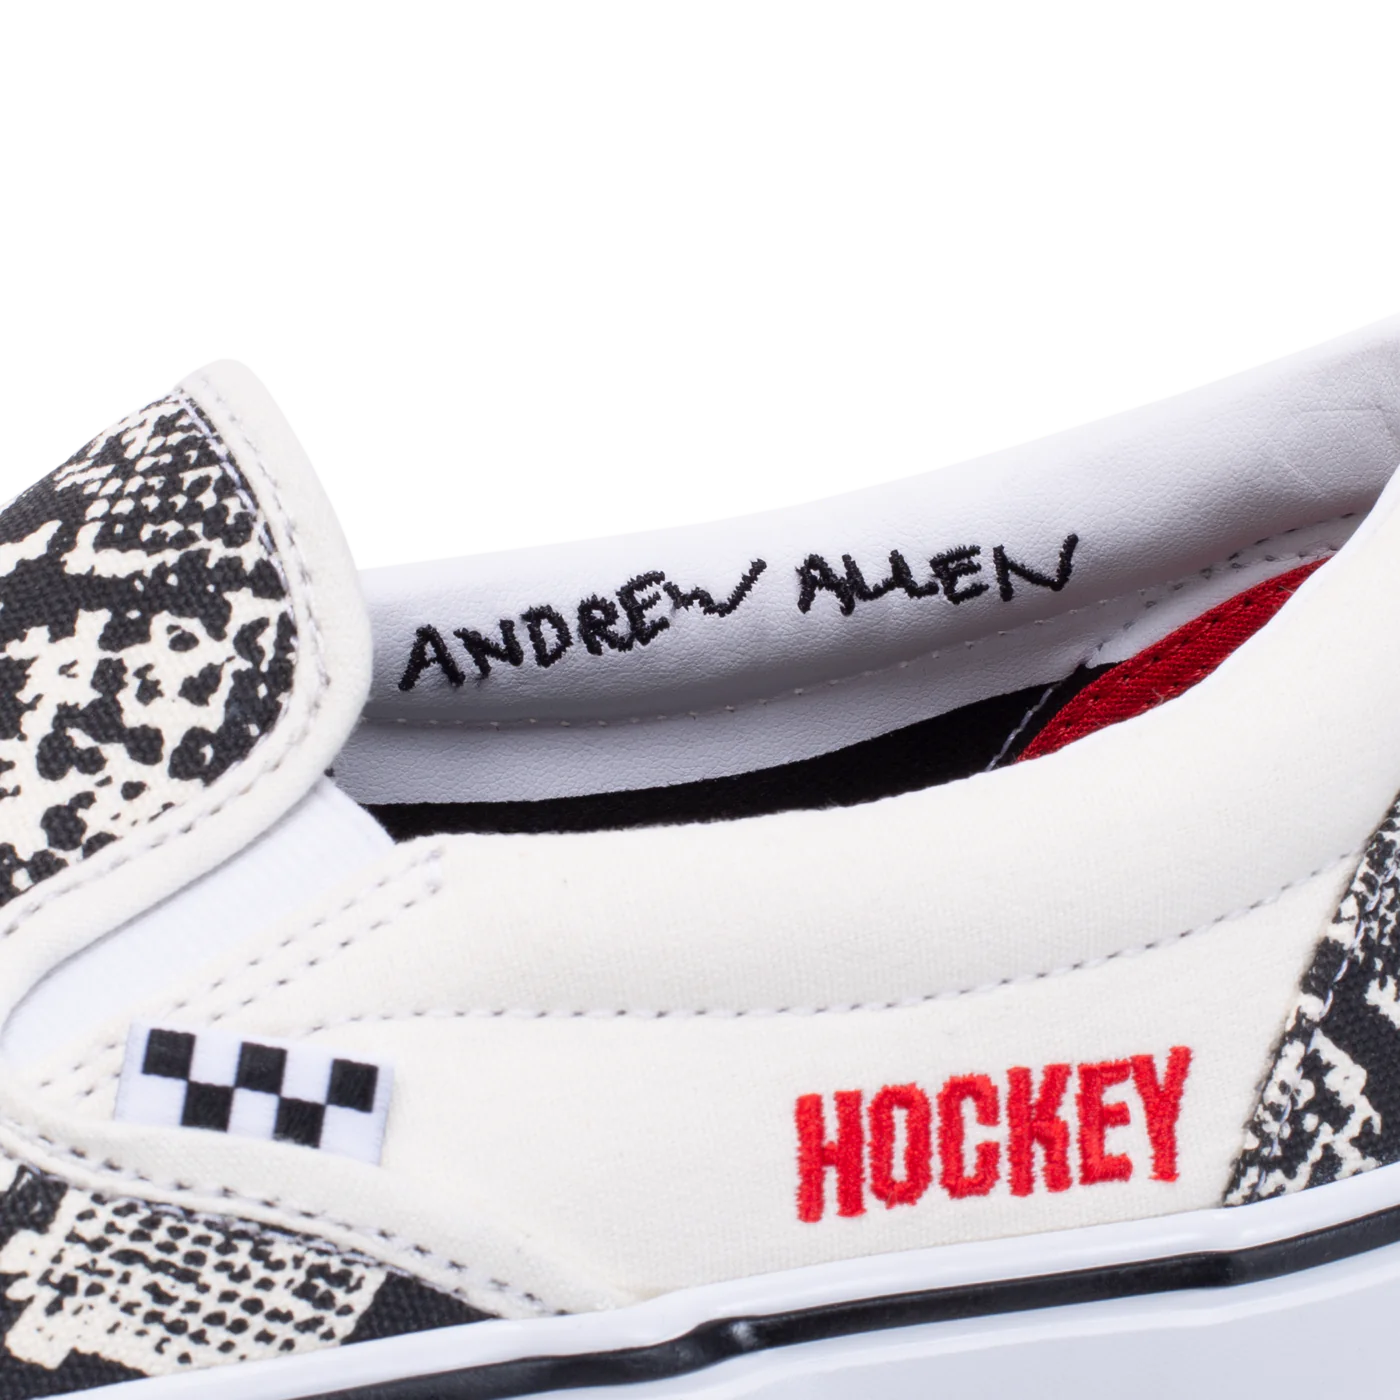 Vans Skate Slip-On Hockey Black